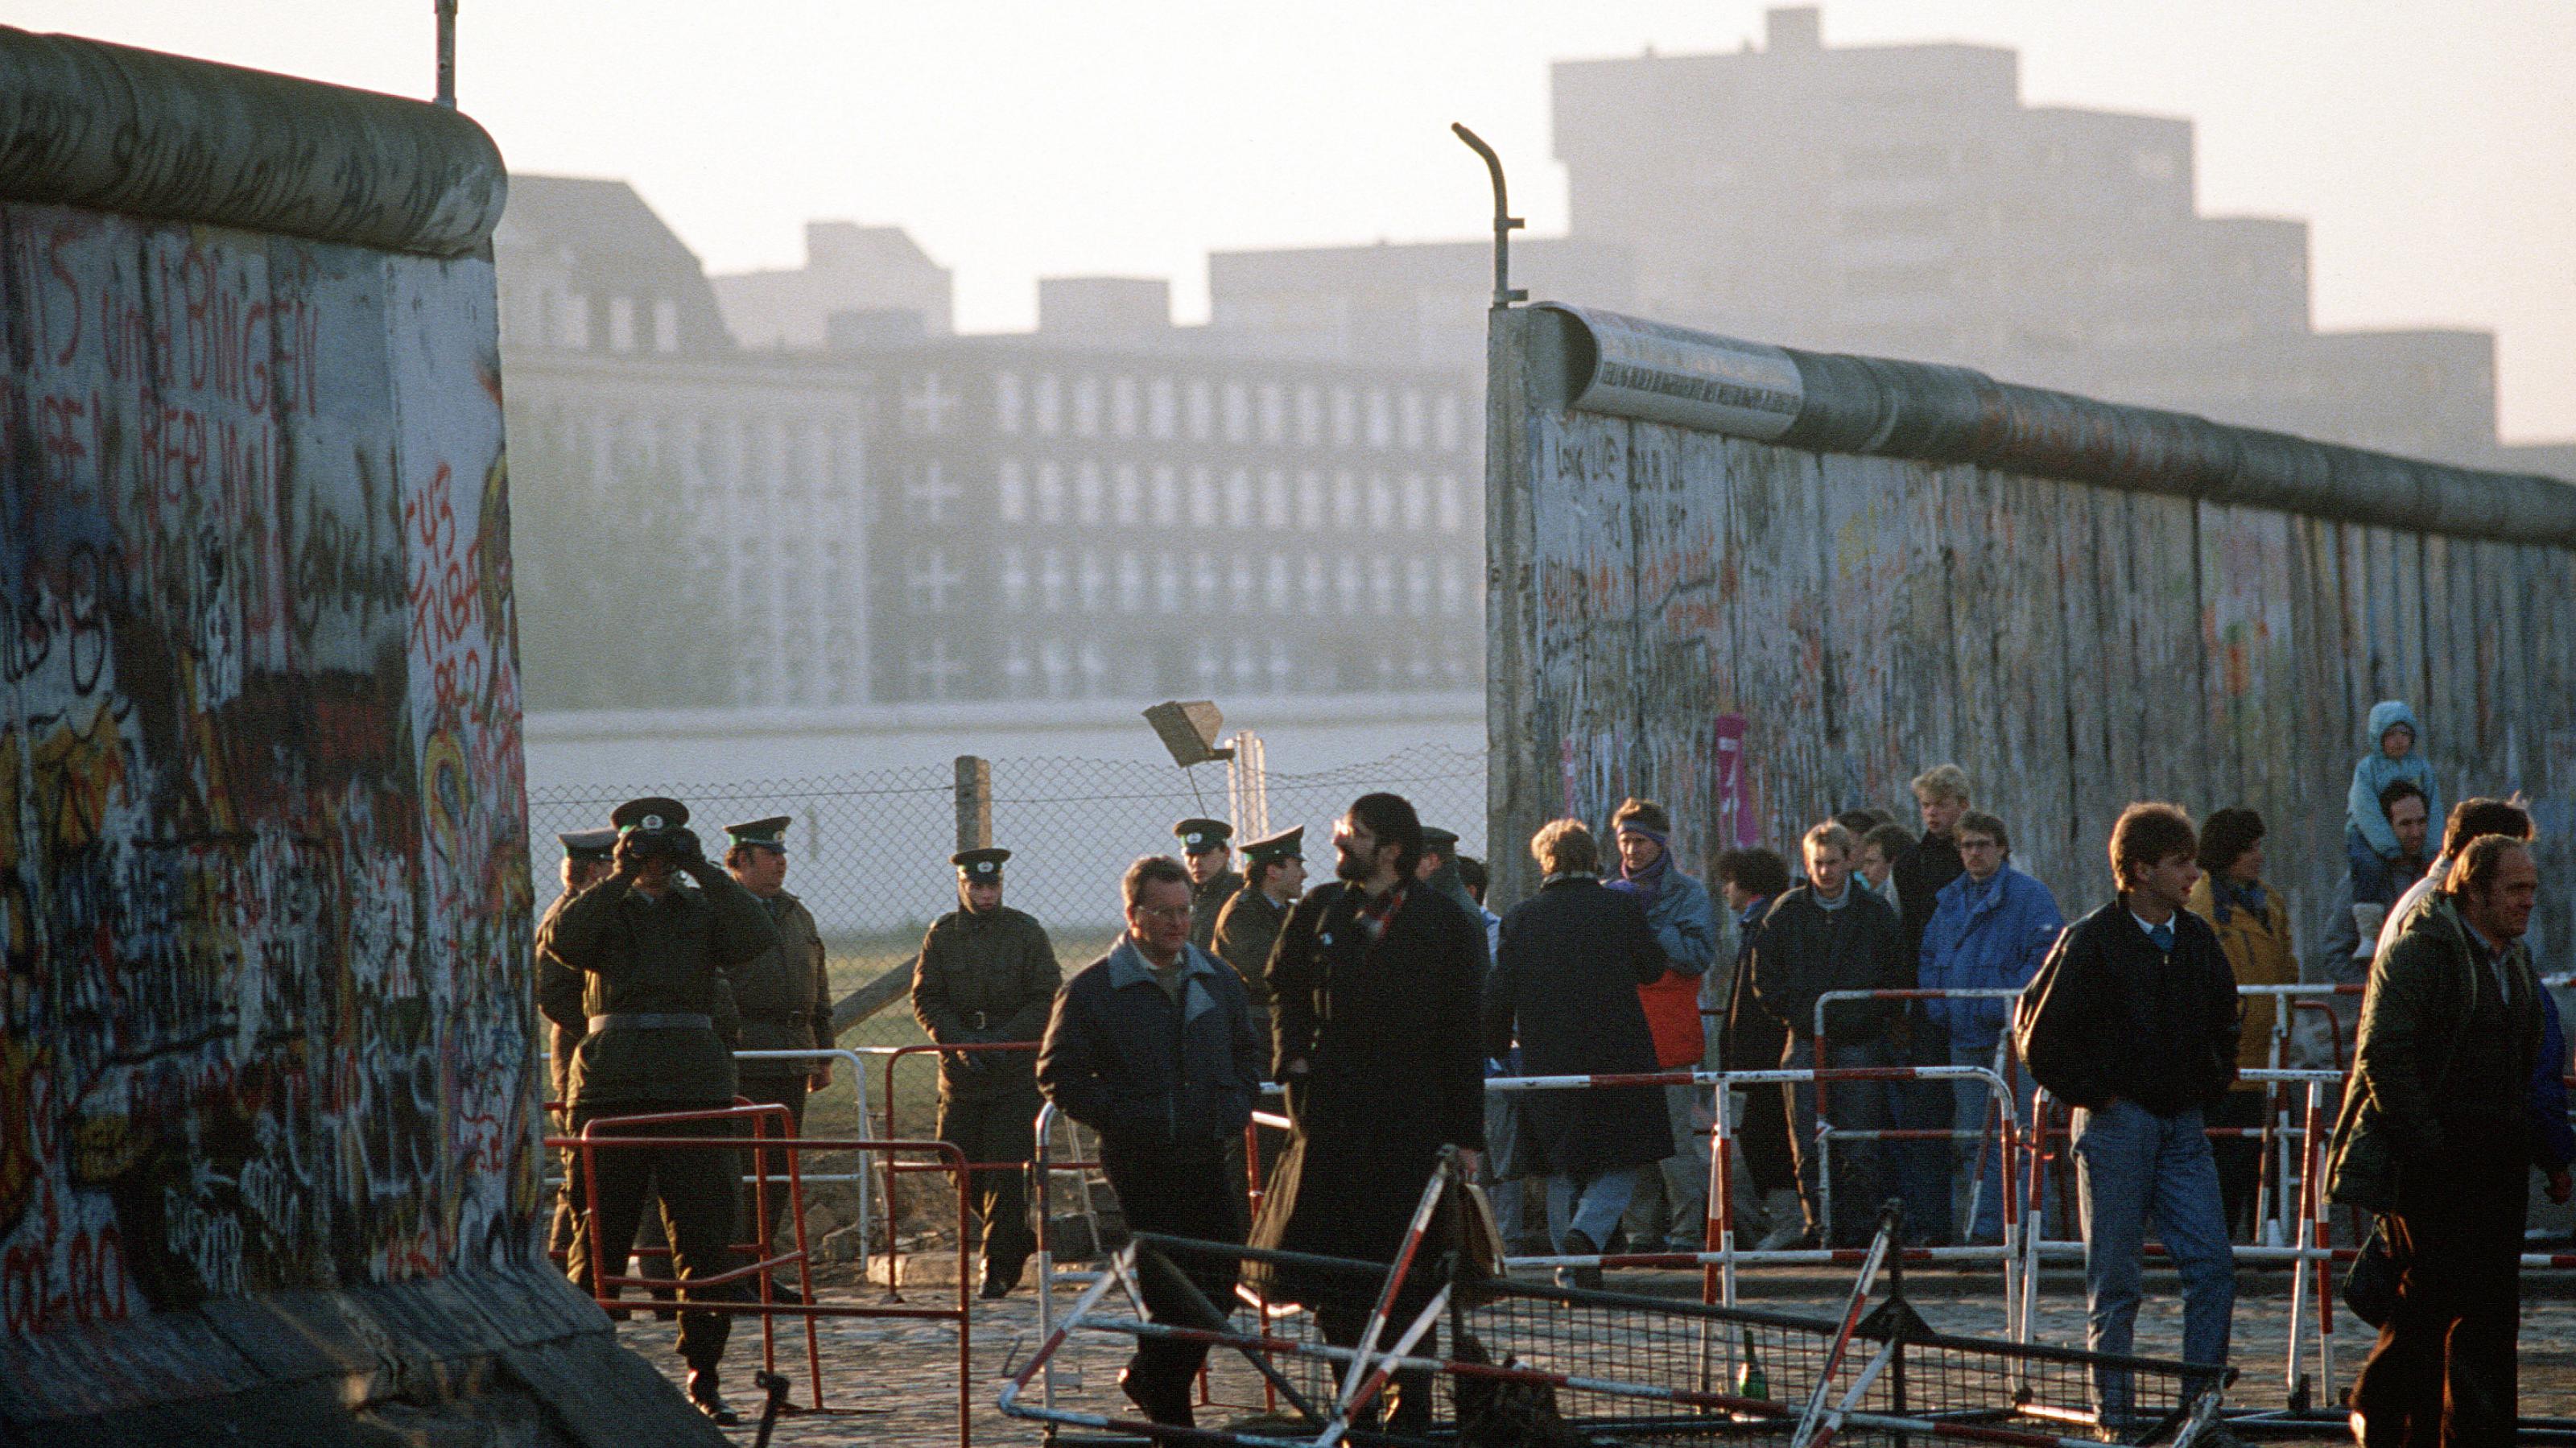 Nach dem Mauerfall gehen Bürger durch die neue Öffnung in der Berliner Mauer am Potsdamer Platz. Neben der Mauer stehen DDR-Polizisten, die die Szenerie beobachten.